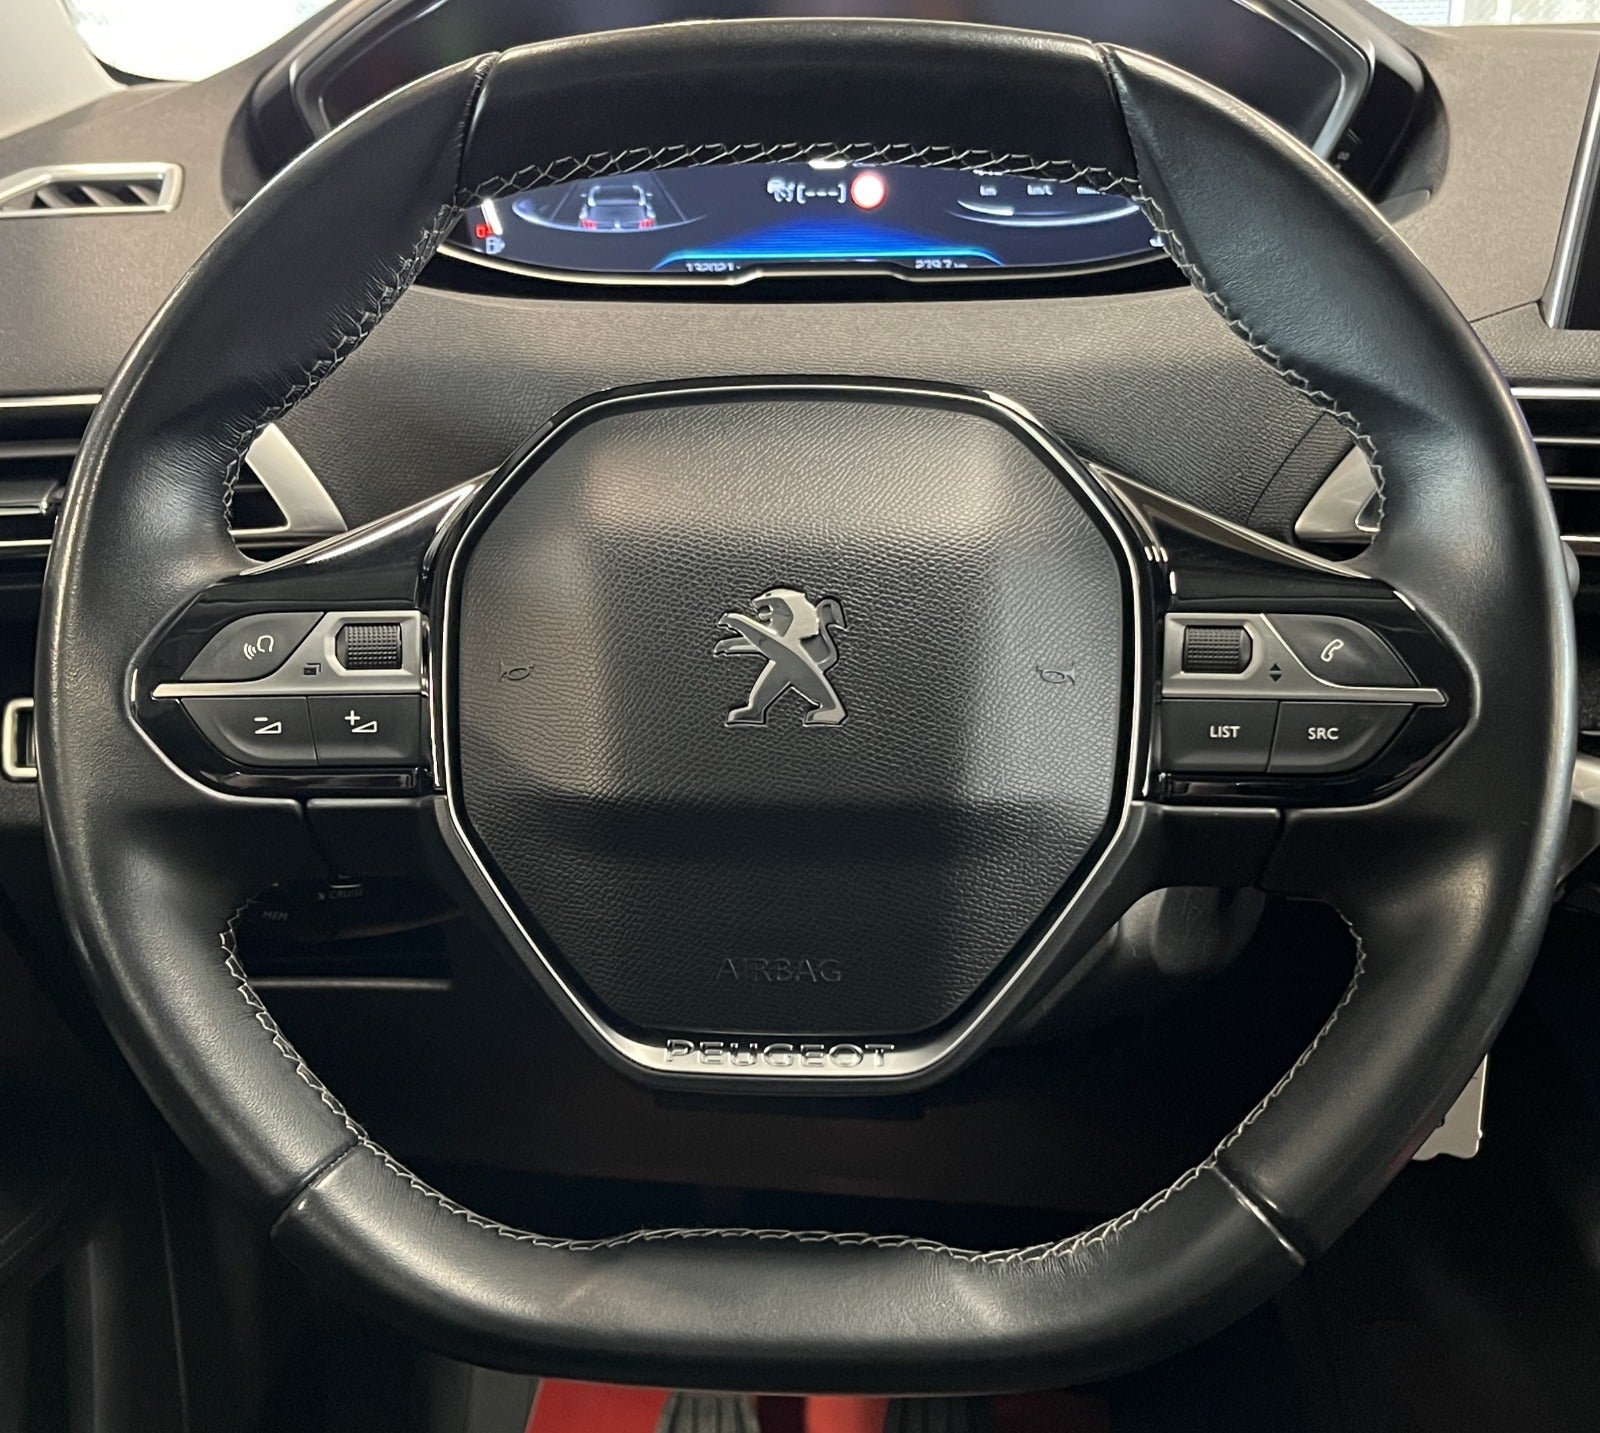 Peugeot 3008 2018